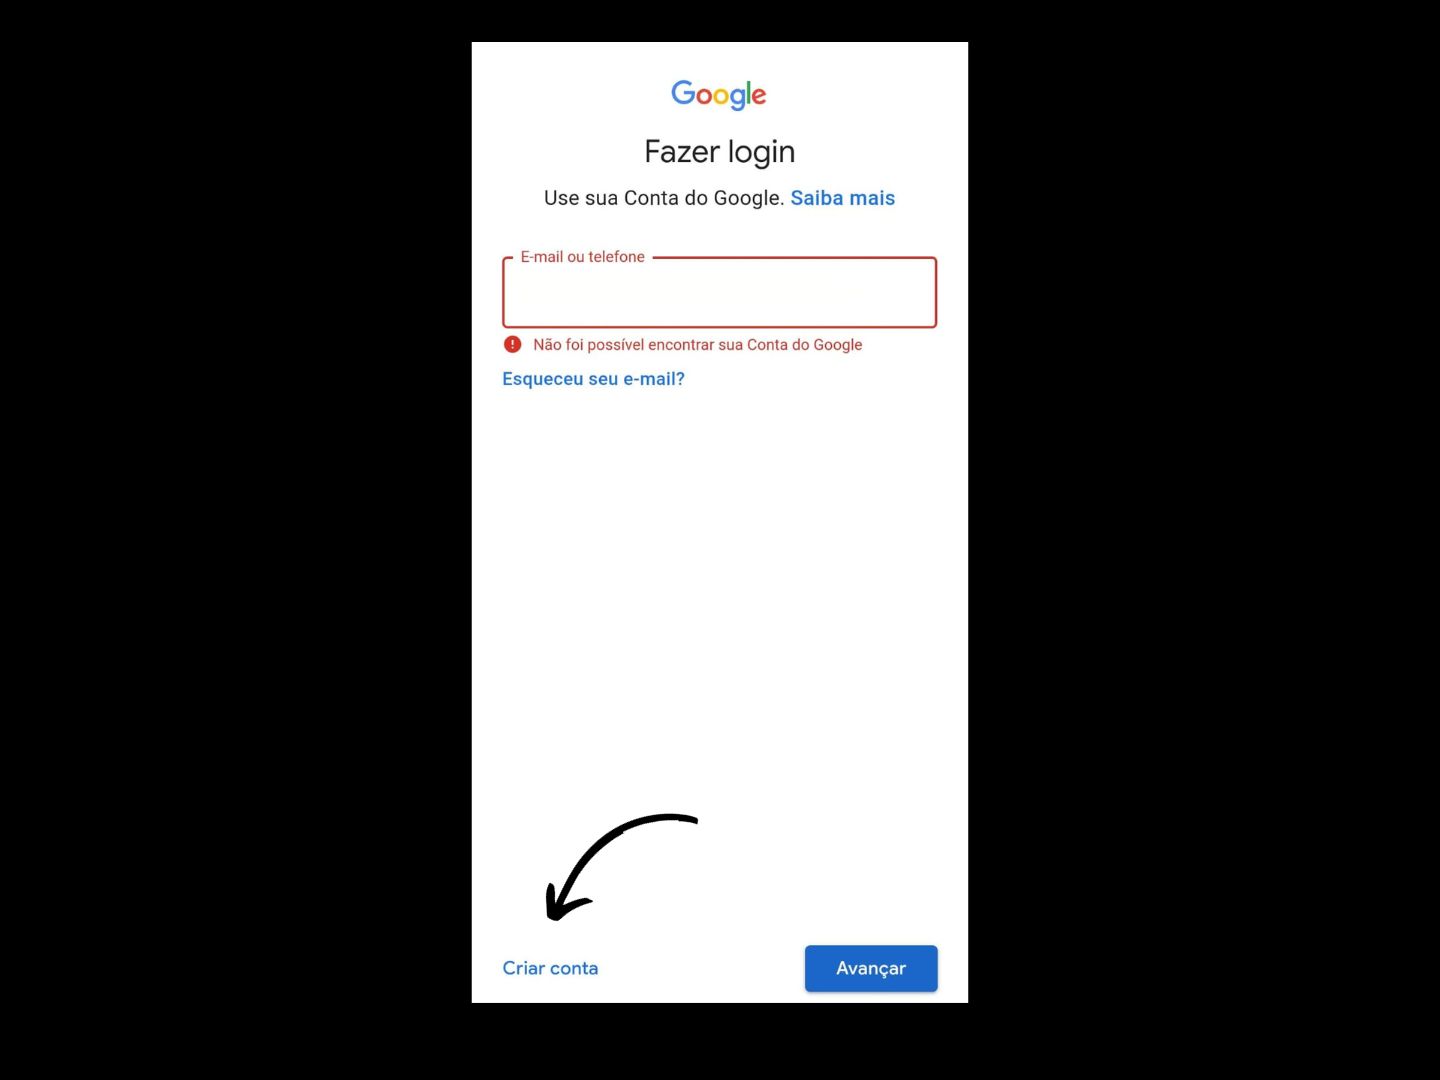 Imagem mostra seta apontando para onde você deve clicar para criar uma conta no Google